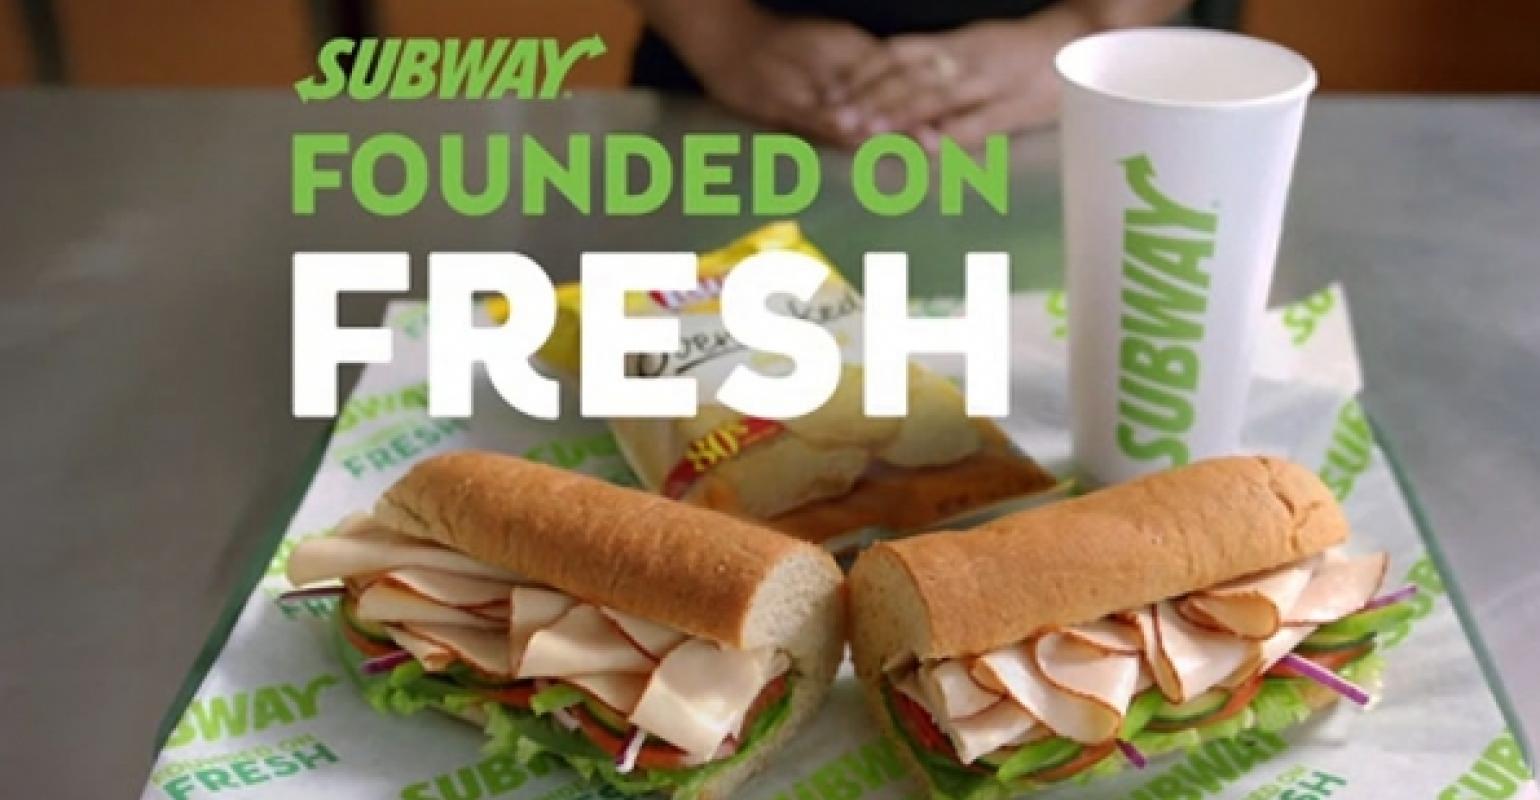 New Subway ads invoke restaurant chain's ‘fresh’ history Nation's